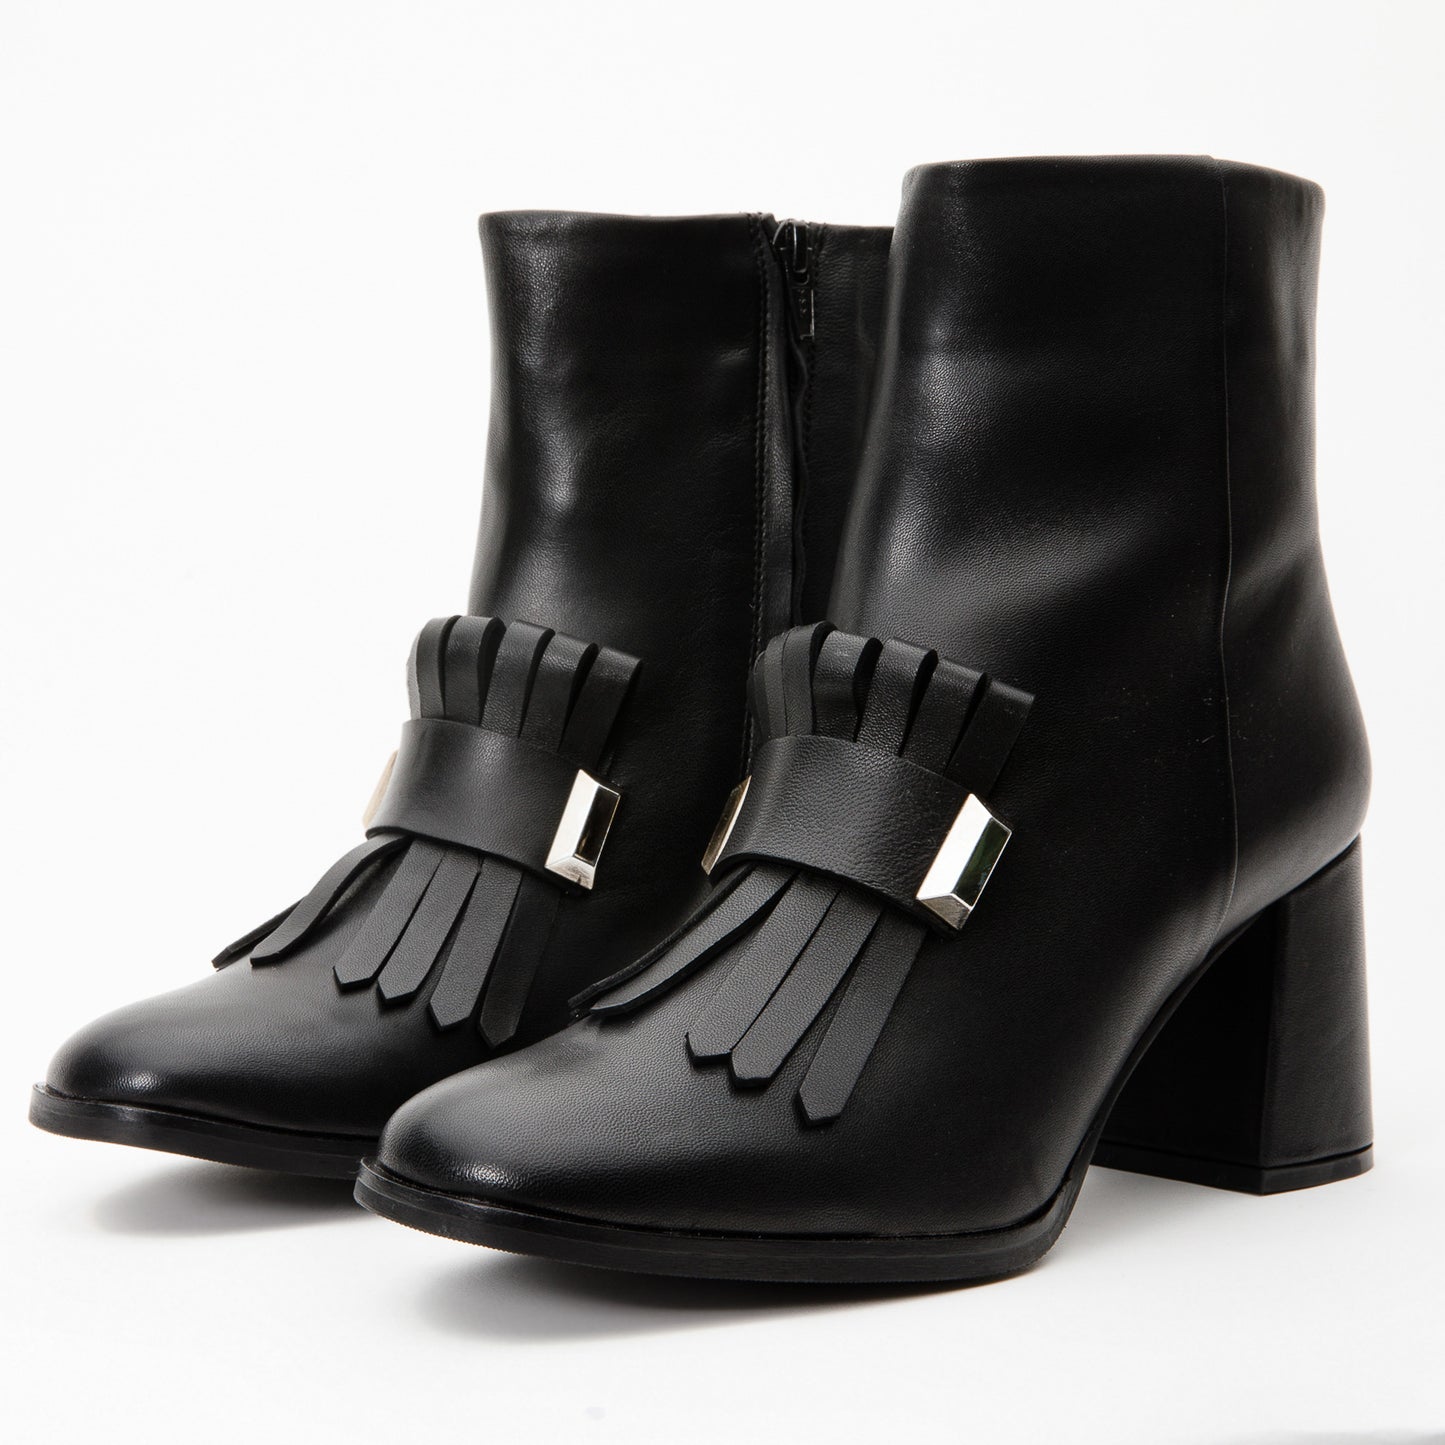 The Luksor Black Leather Block Heel Women Boot